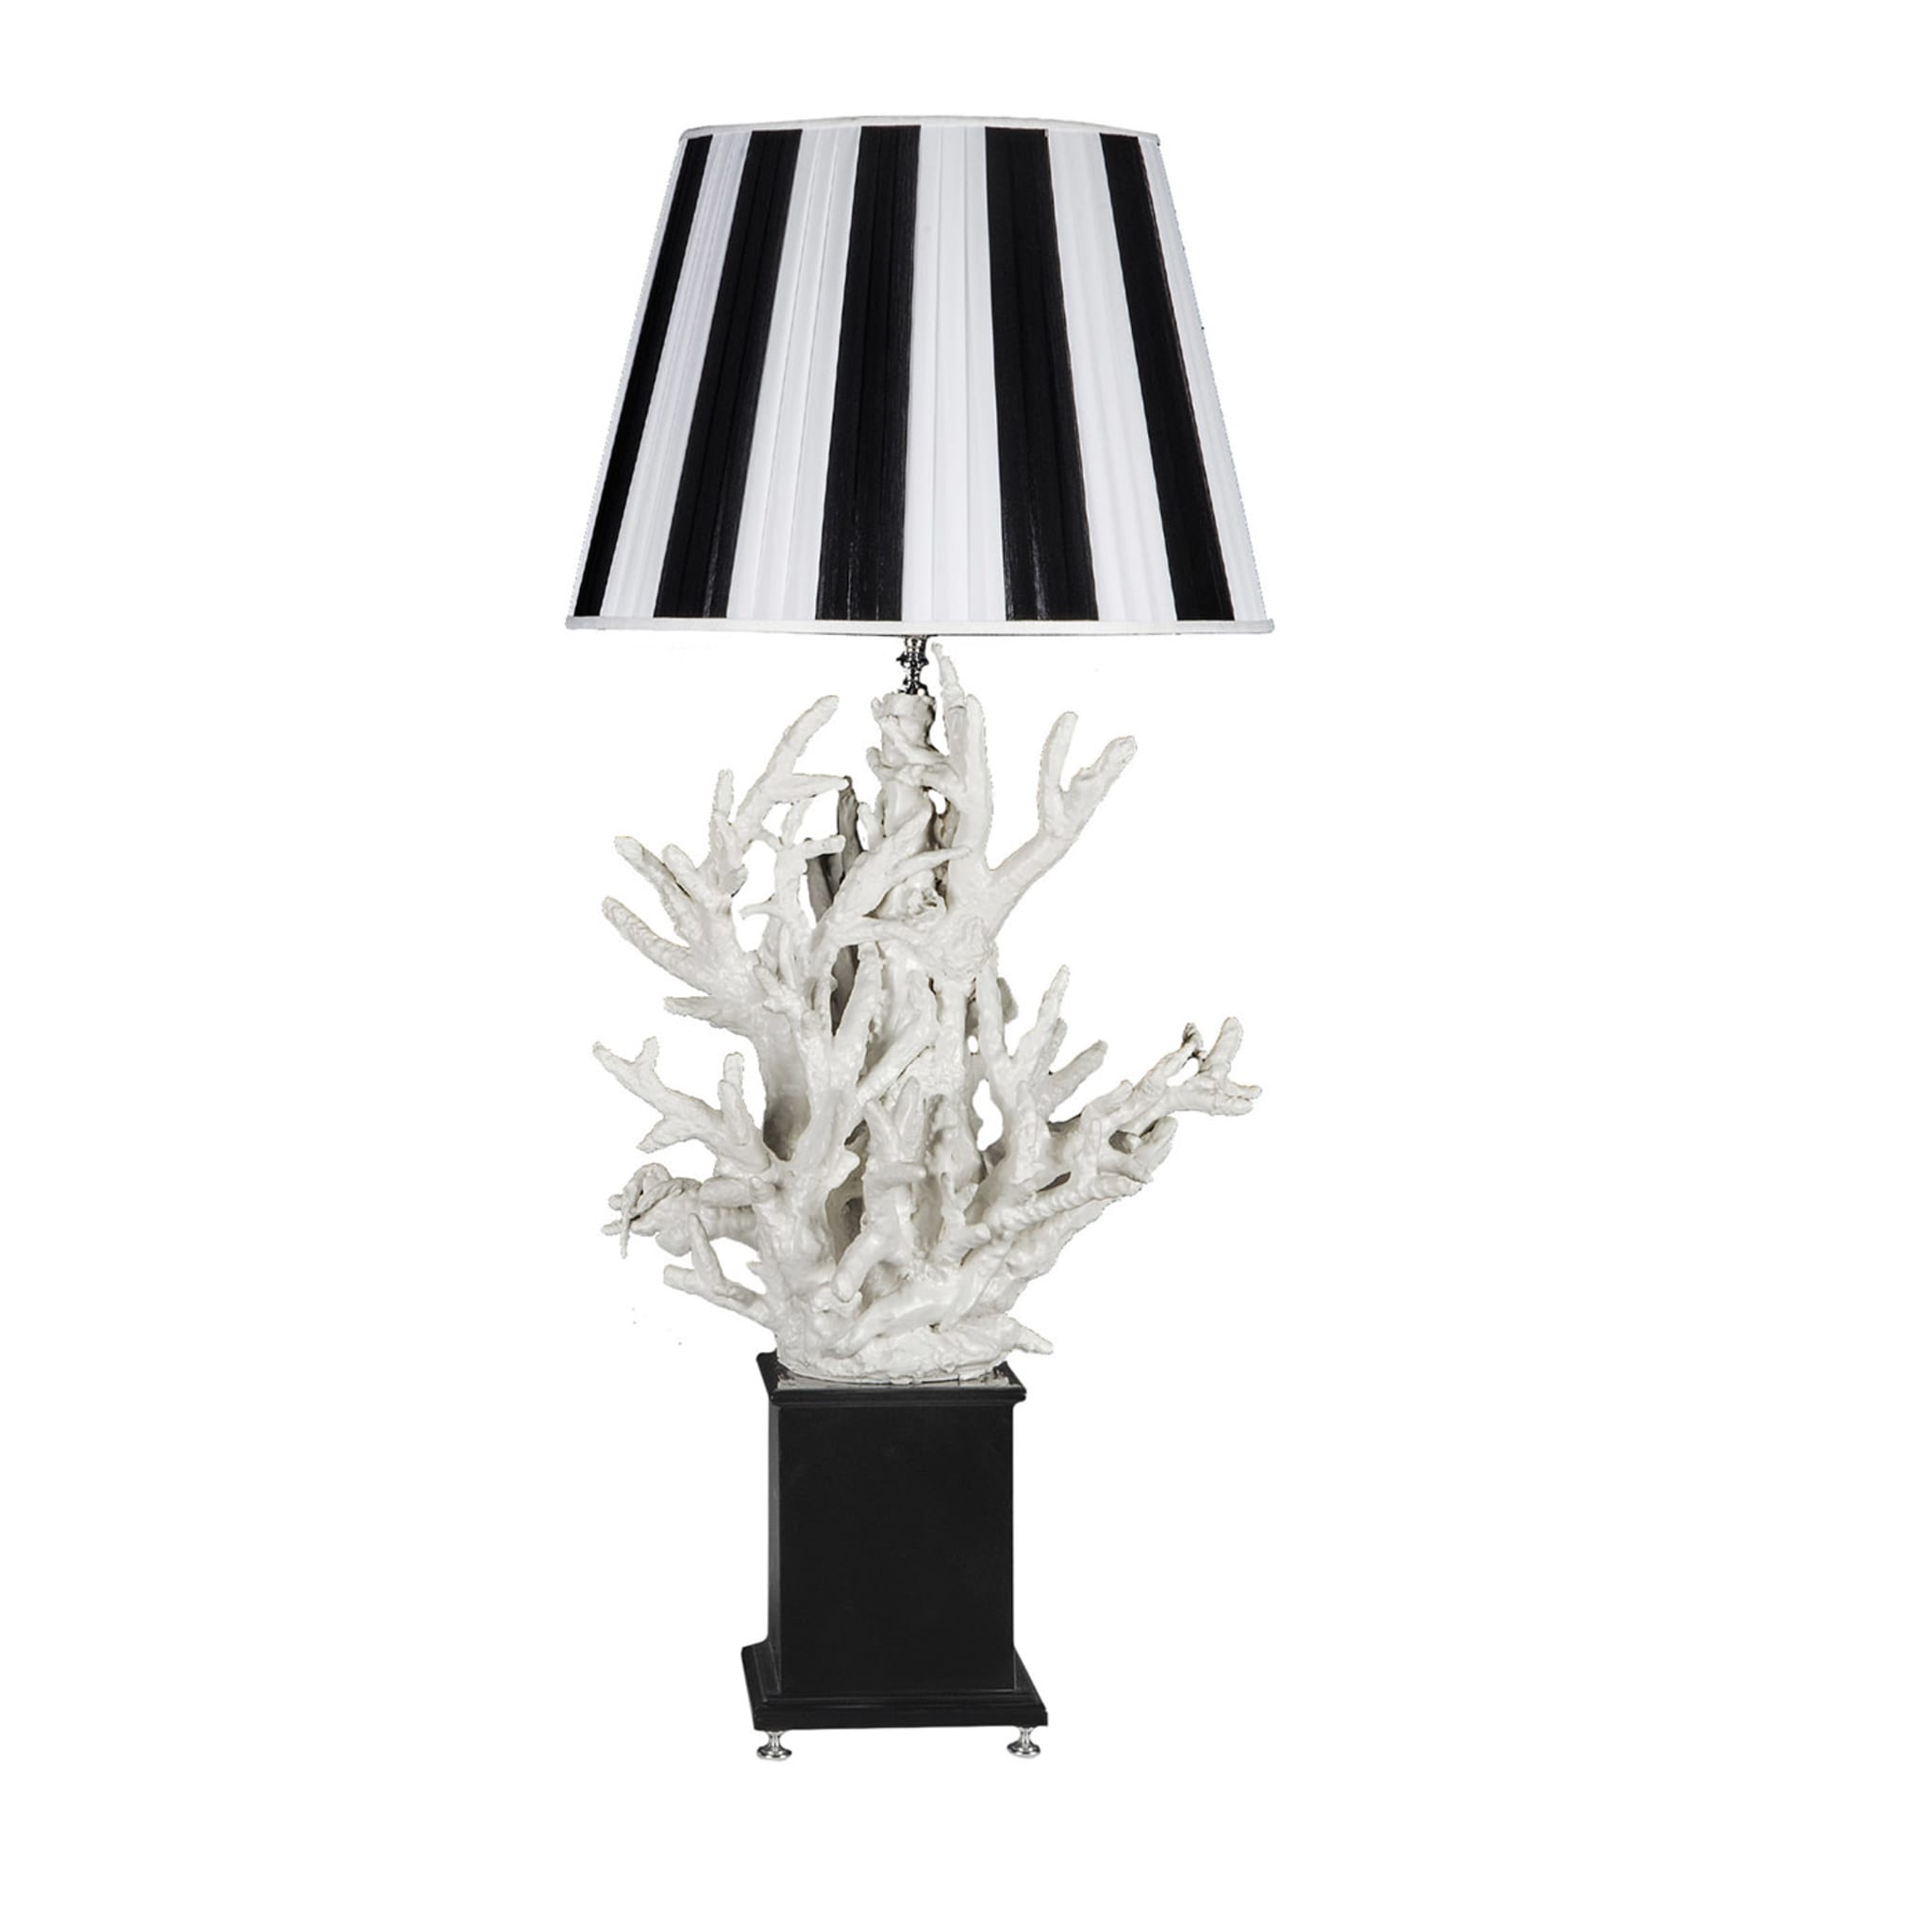 Corallo Black & White Table Lamp by Antonio Fullin - Main view